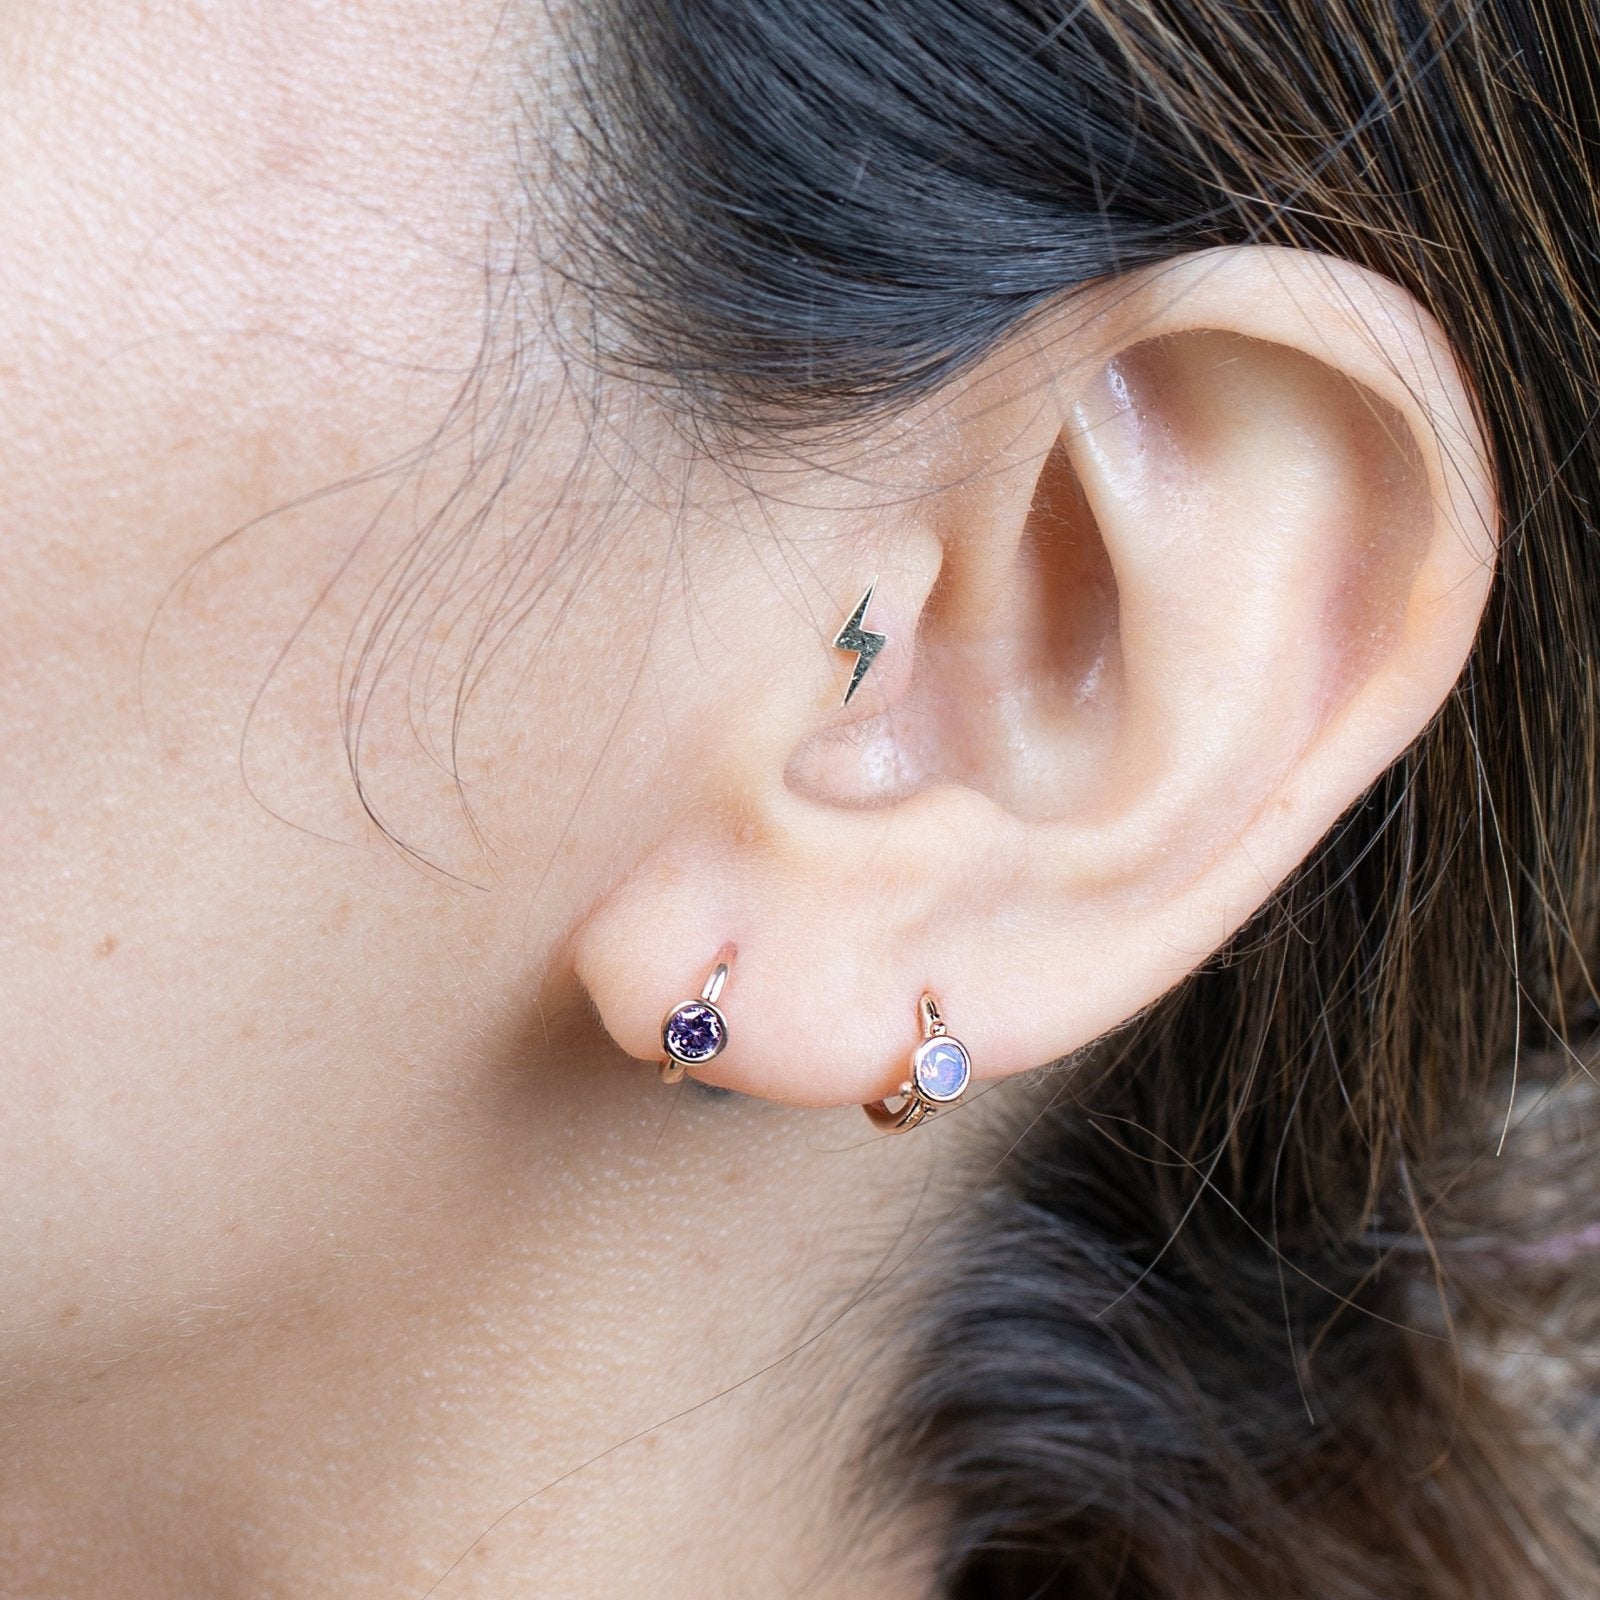 Pink Opal Huggie Earring Earrings Estella Collection #product_description# 14k Amethyst Birthstone #tag4# #tag5# #tag6# #tag7# #tag8# #tag9# #tag10#